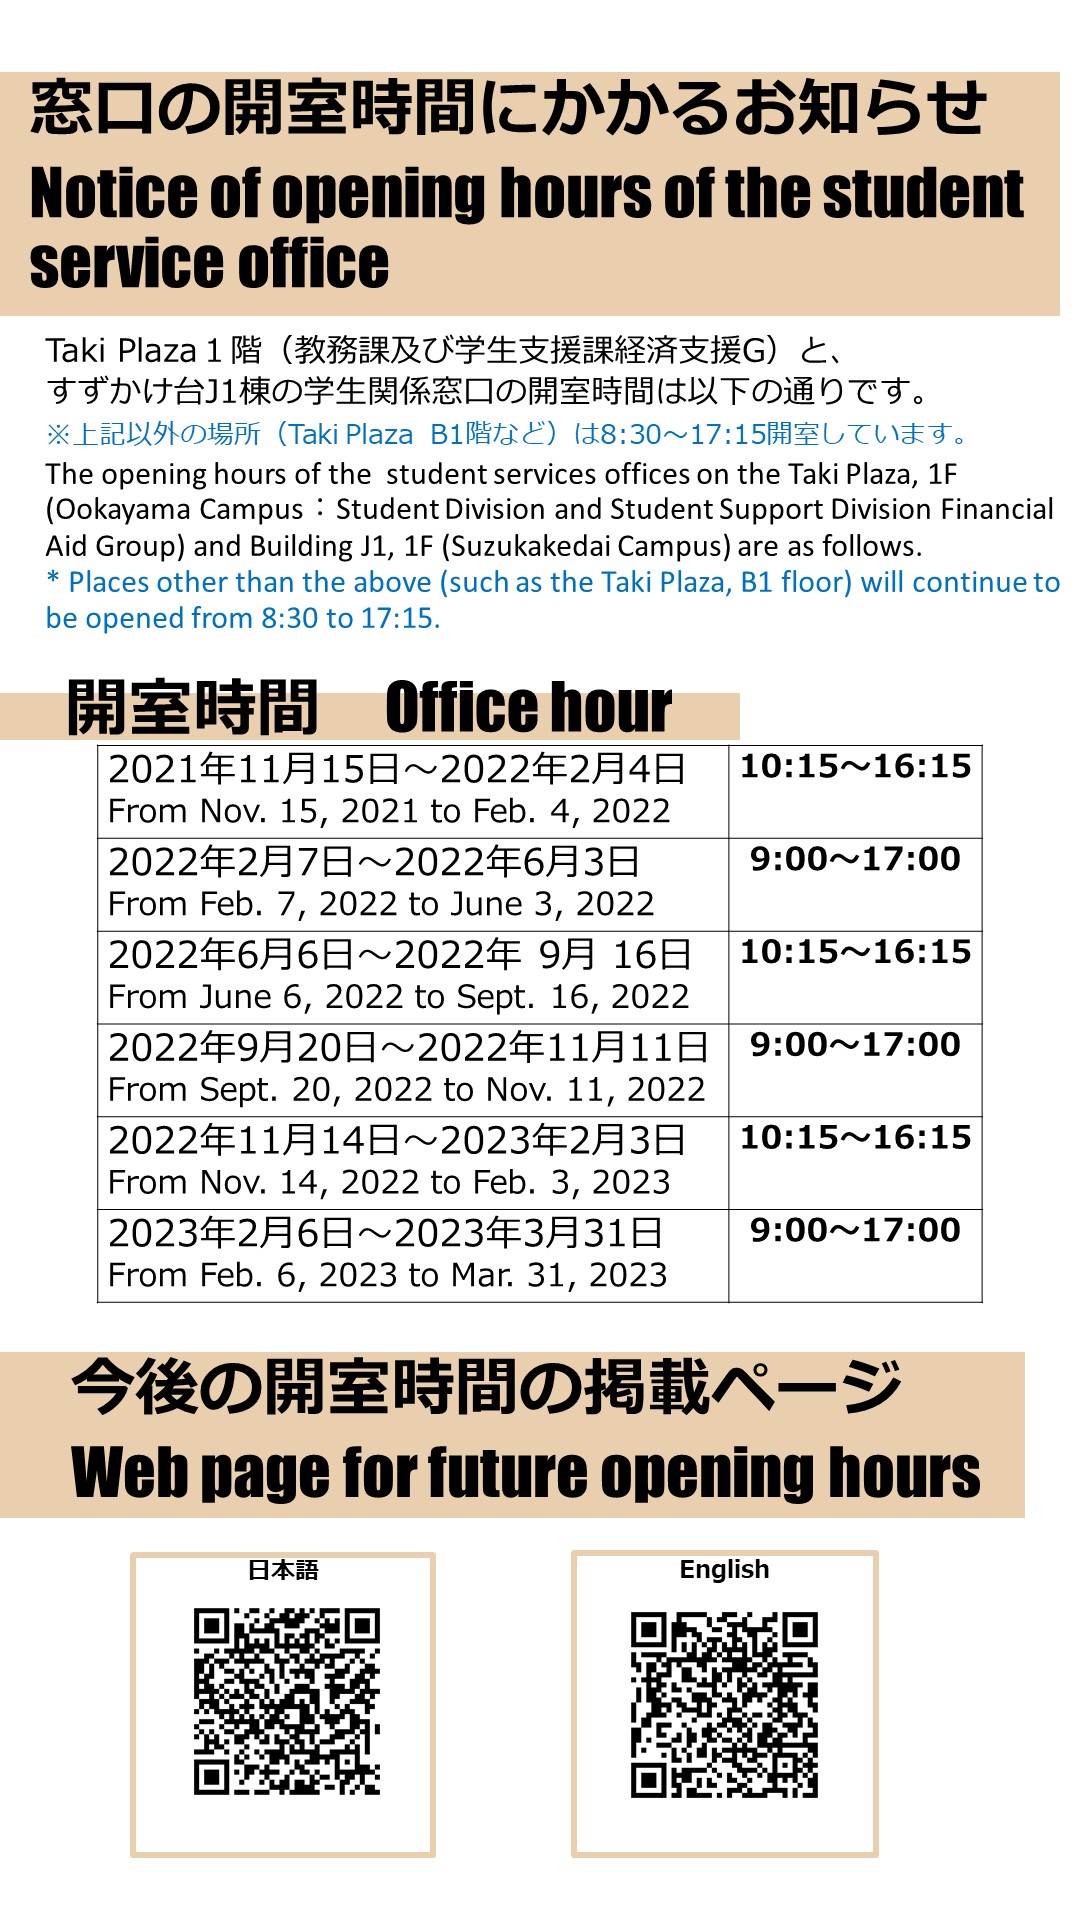 【2/7(月)~】Taki Plaza 1階  （教務課、学生支援課経済支援G）窓口開室に関わるお知らせ